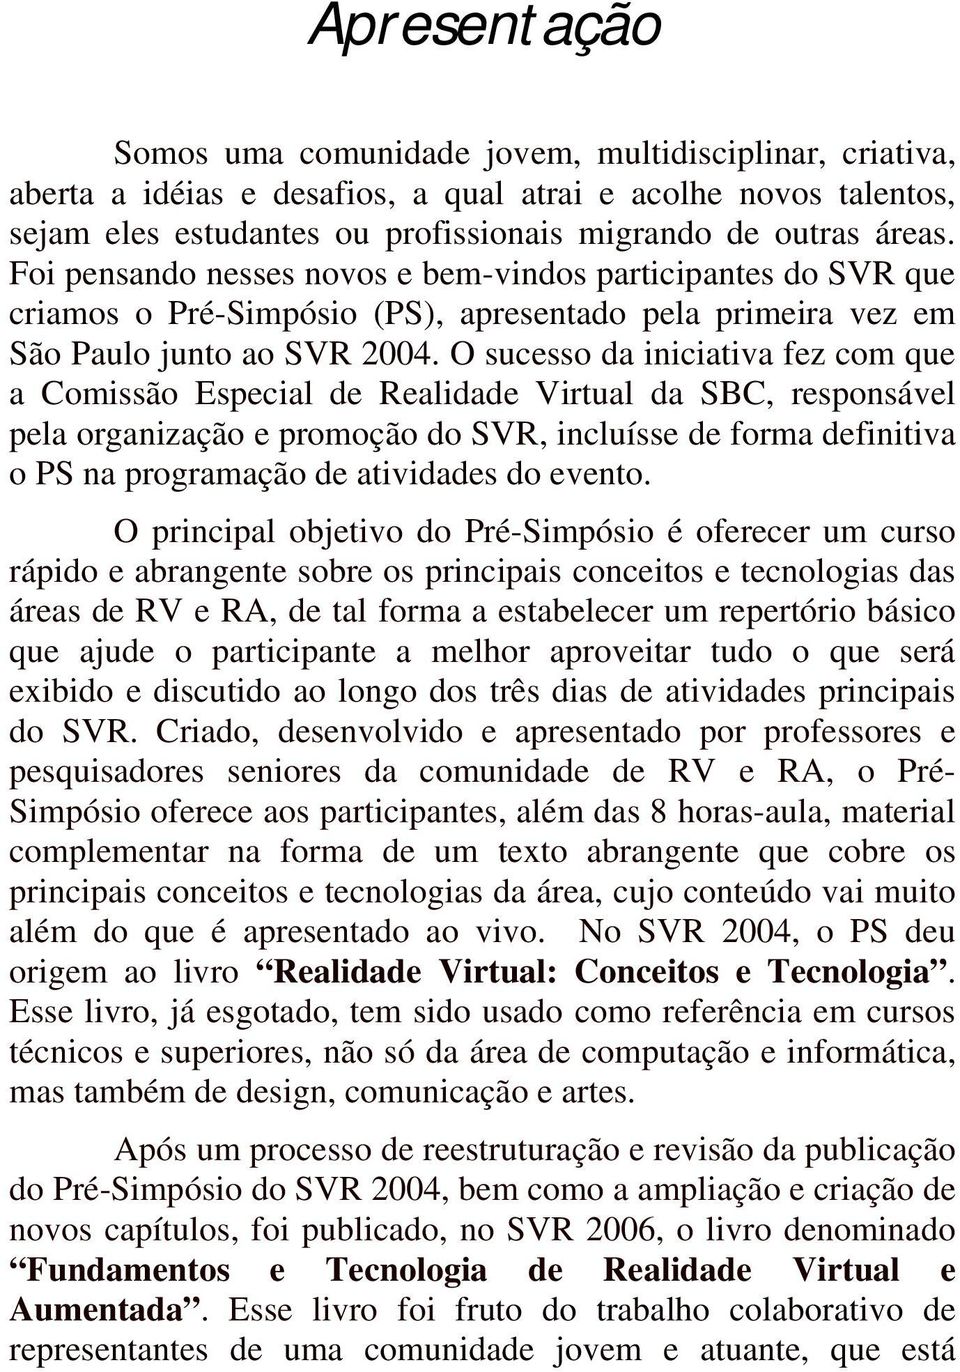 O sucesso da iniciativa fez com que a Comissão Especial de Realidade Virtual da SBC, responsável pela organização e promoção do SVR, incluísse de forma definitiva o PS na programação de atividades do